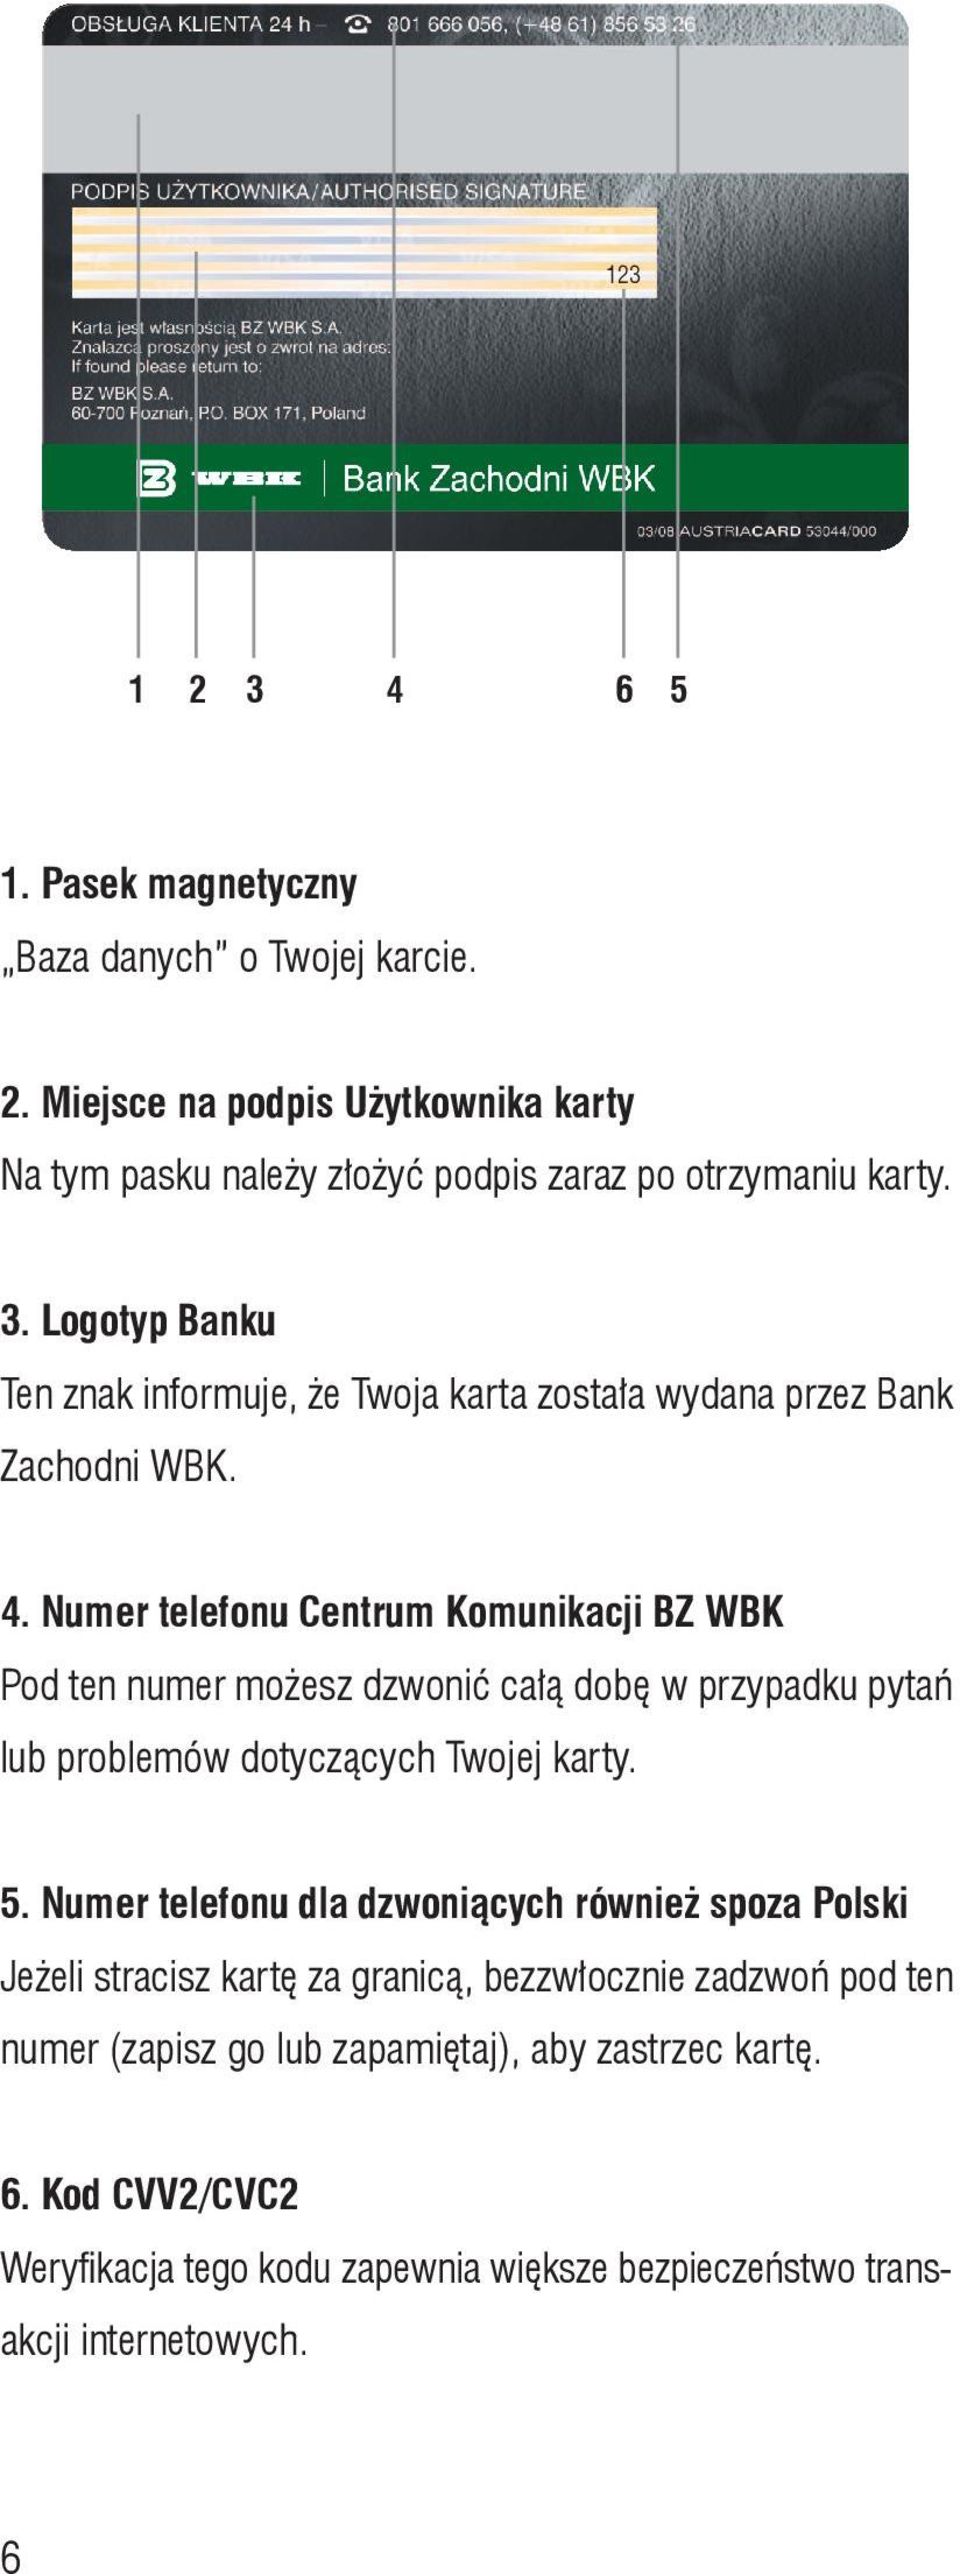 Numer telefonu dla dzwoniących również spoza Polski Jeżeli stracisz kartę za granicą, bezzwłocznie zadzwoń pod ten numer (zapisz go lub zapamiętaj), aby zastrzec kartę.